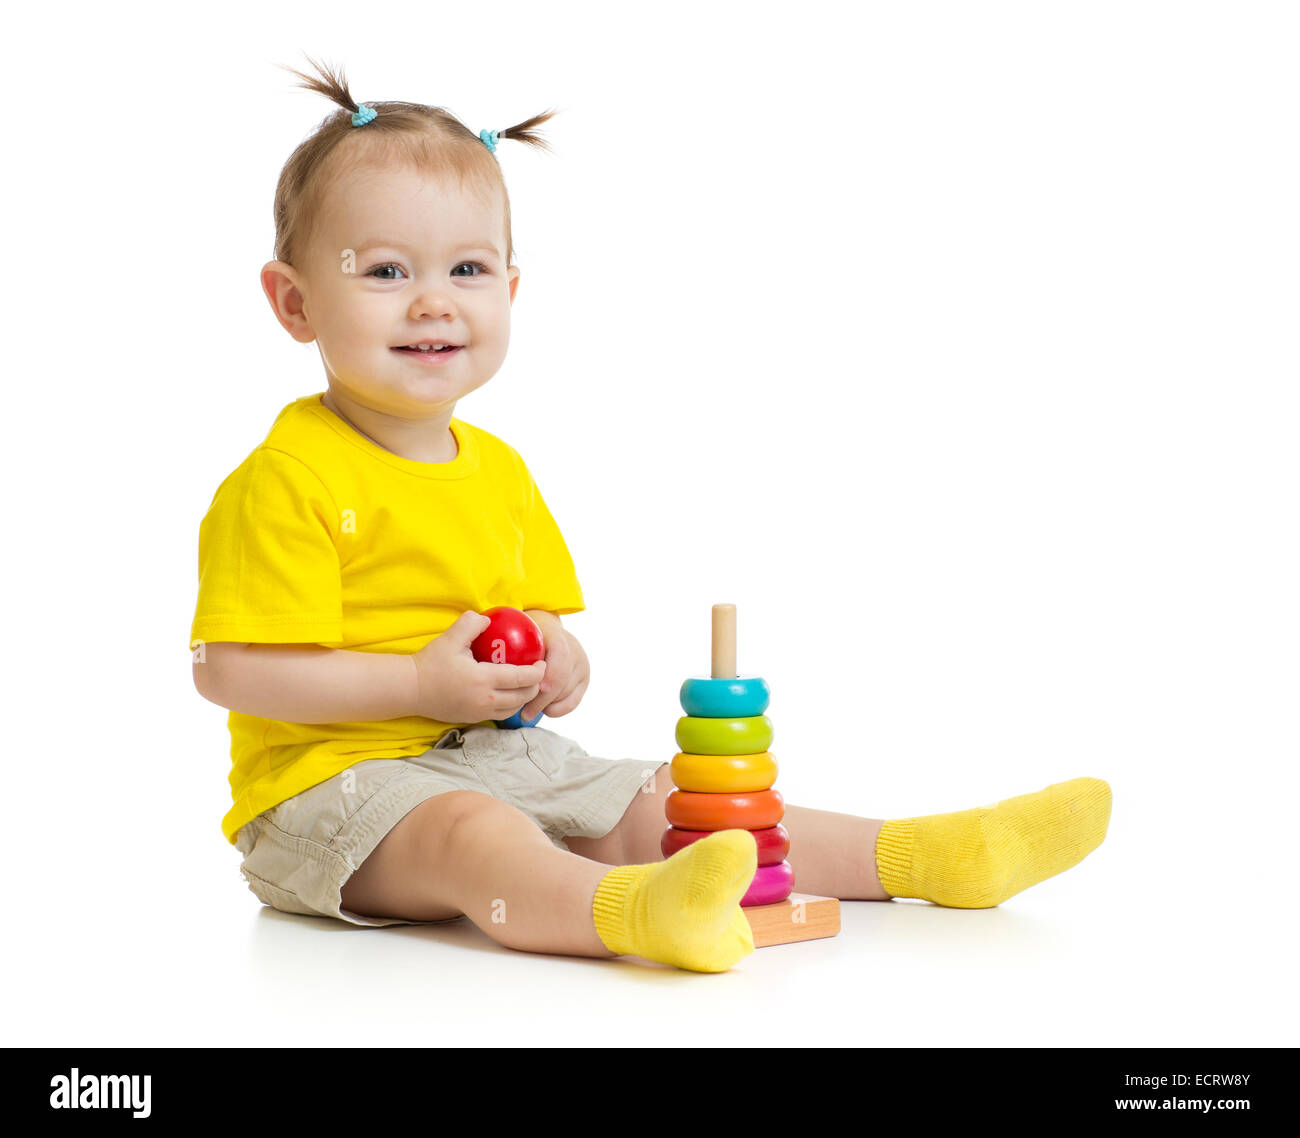 Heureux bébé jouant avec pyramide bois colorés isolated on white Banque D'Images